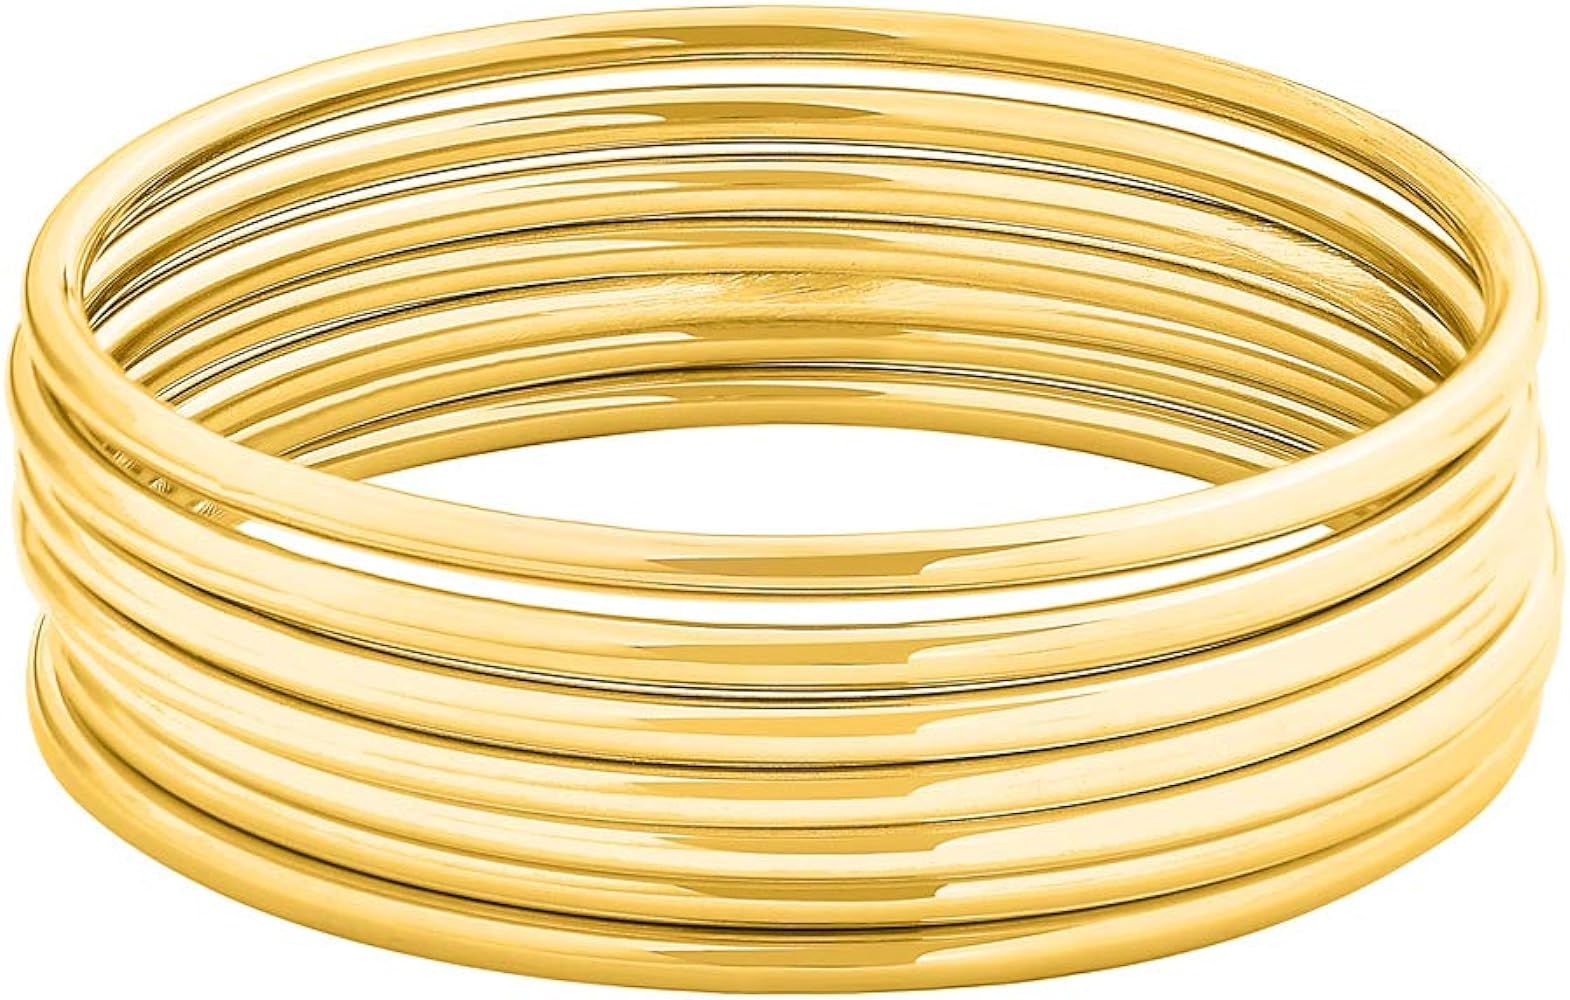 Amazon.com: Edforce Stainless Steel Glossy Thin Round Bangle Bracelet Set for Women, Set of 7 (Go... | Amazon (US)